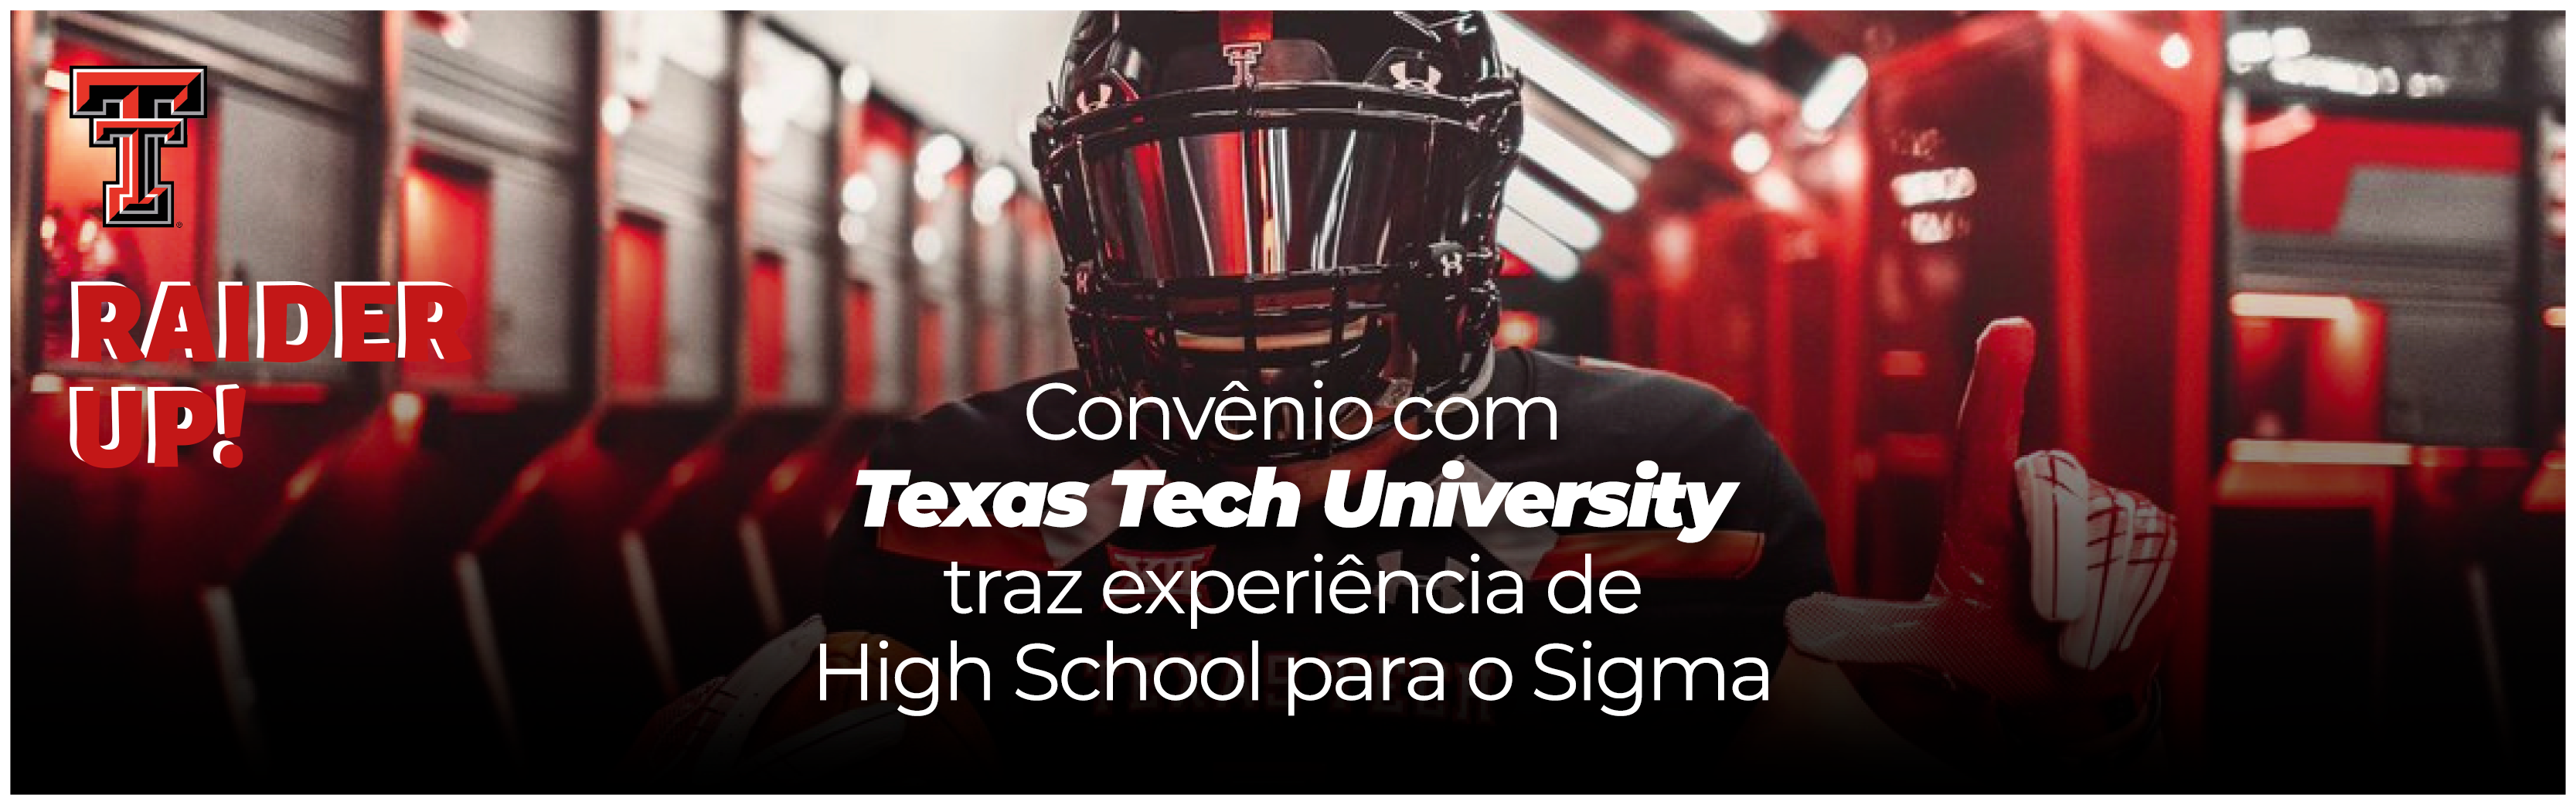 Convênio com Texas Tech University traz experiência de High School para o Sigma